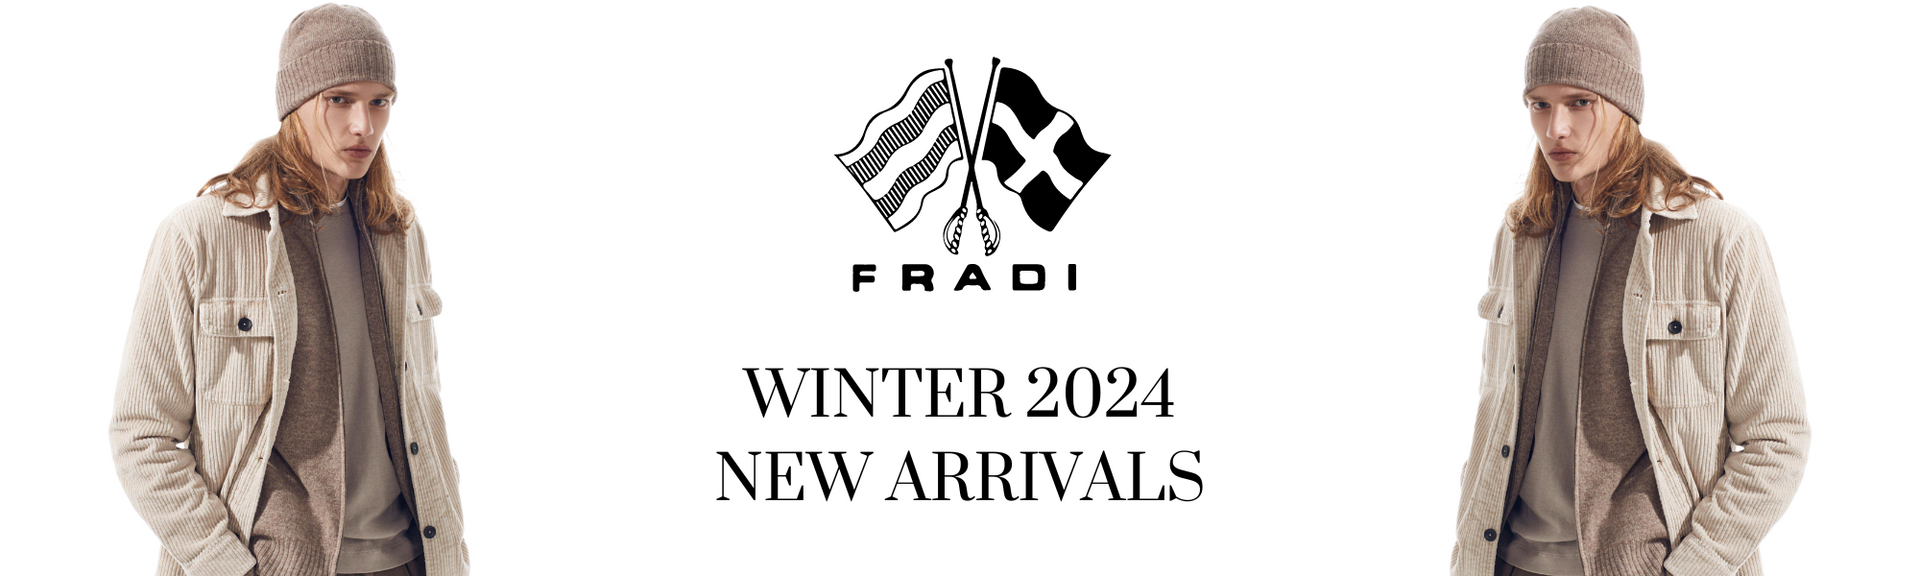 Fradi - New Arrivals